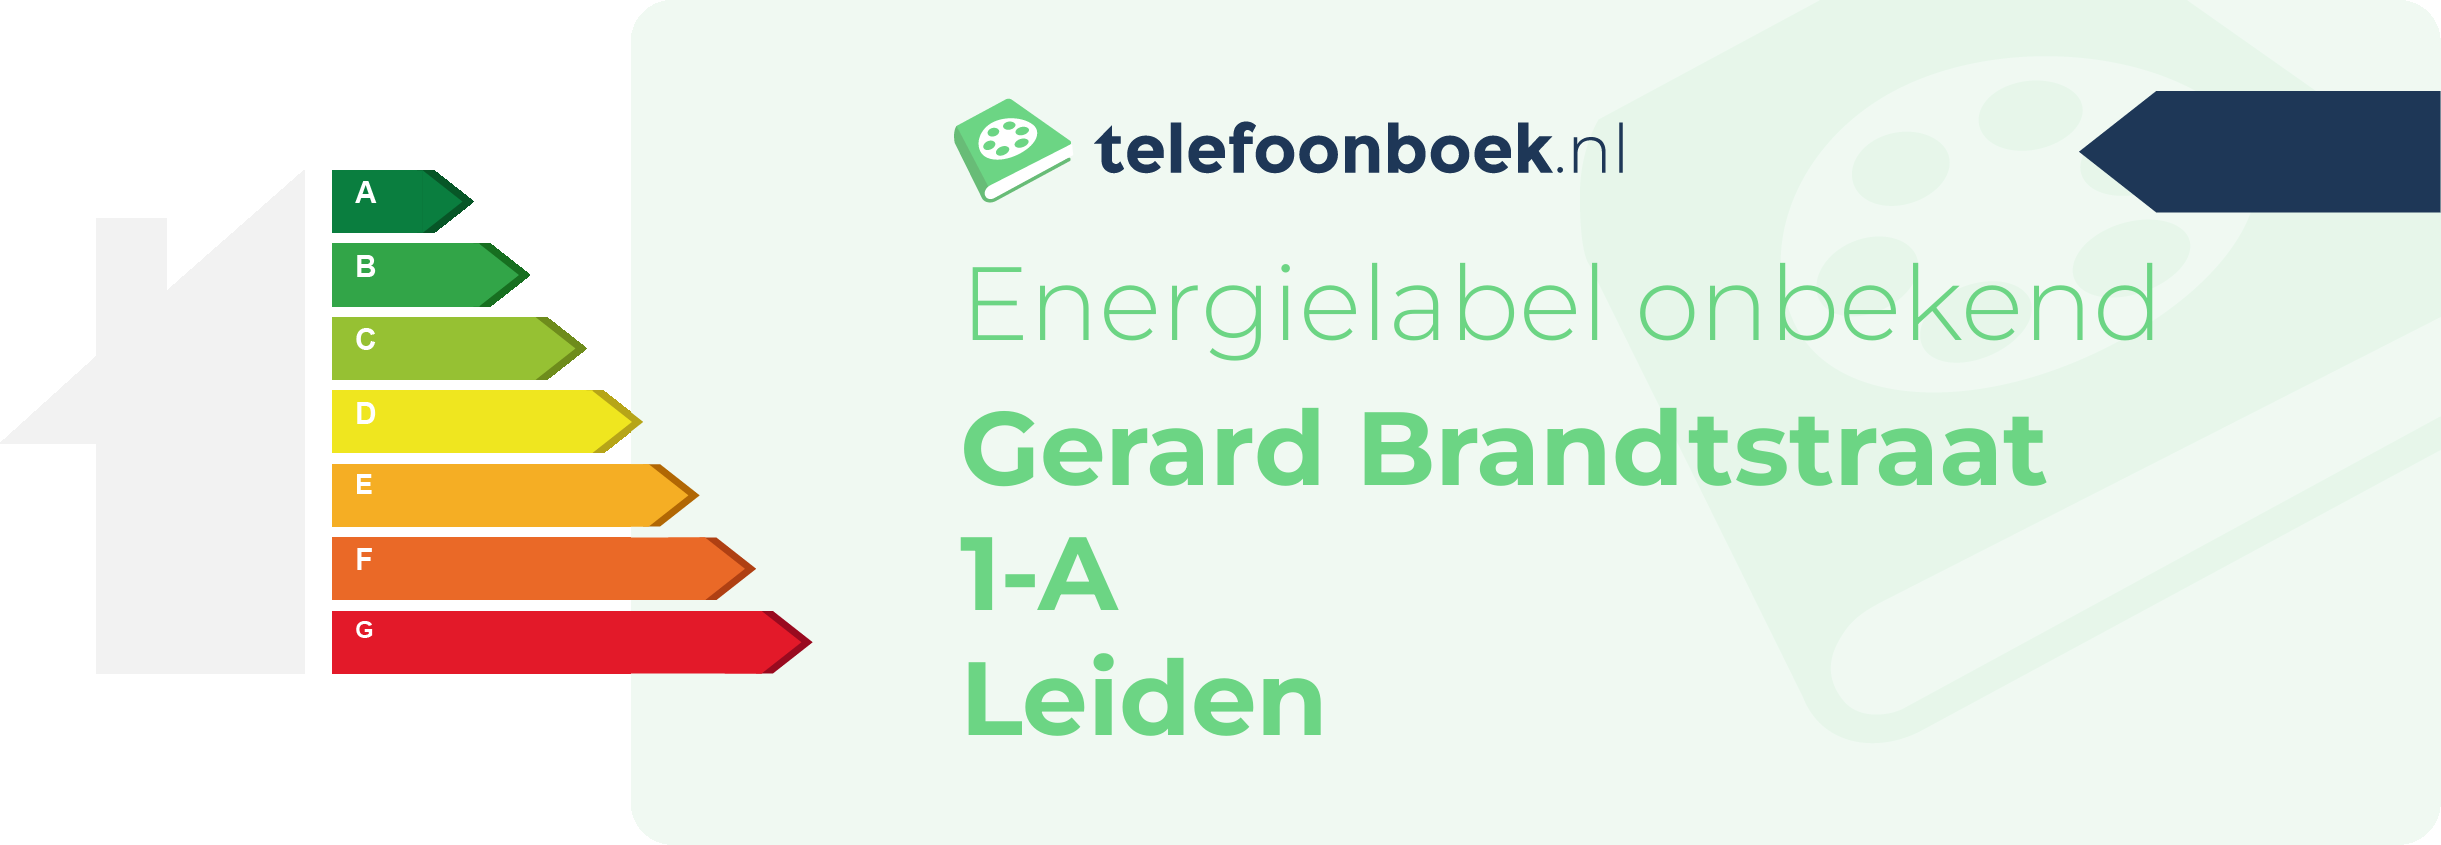 Energielabel Gerard Brandtstraat 1-A Leiden